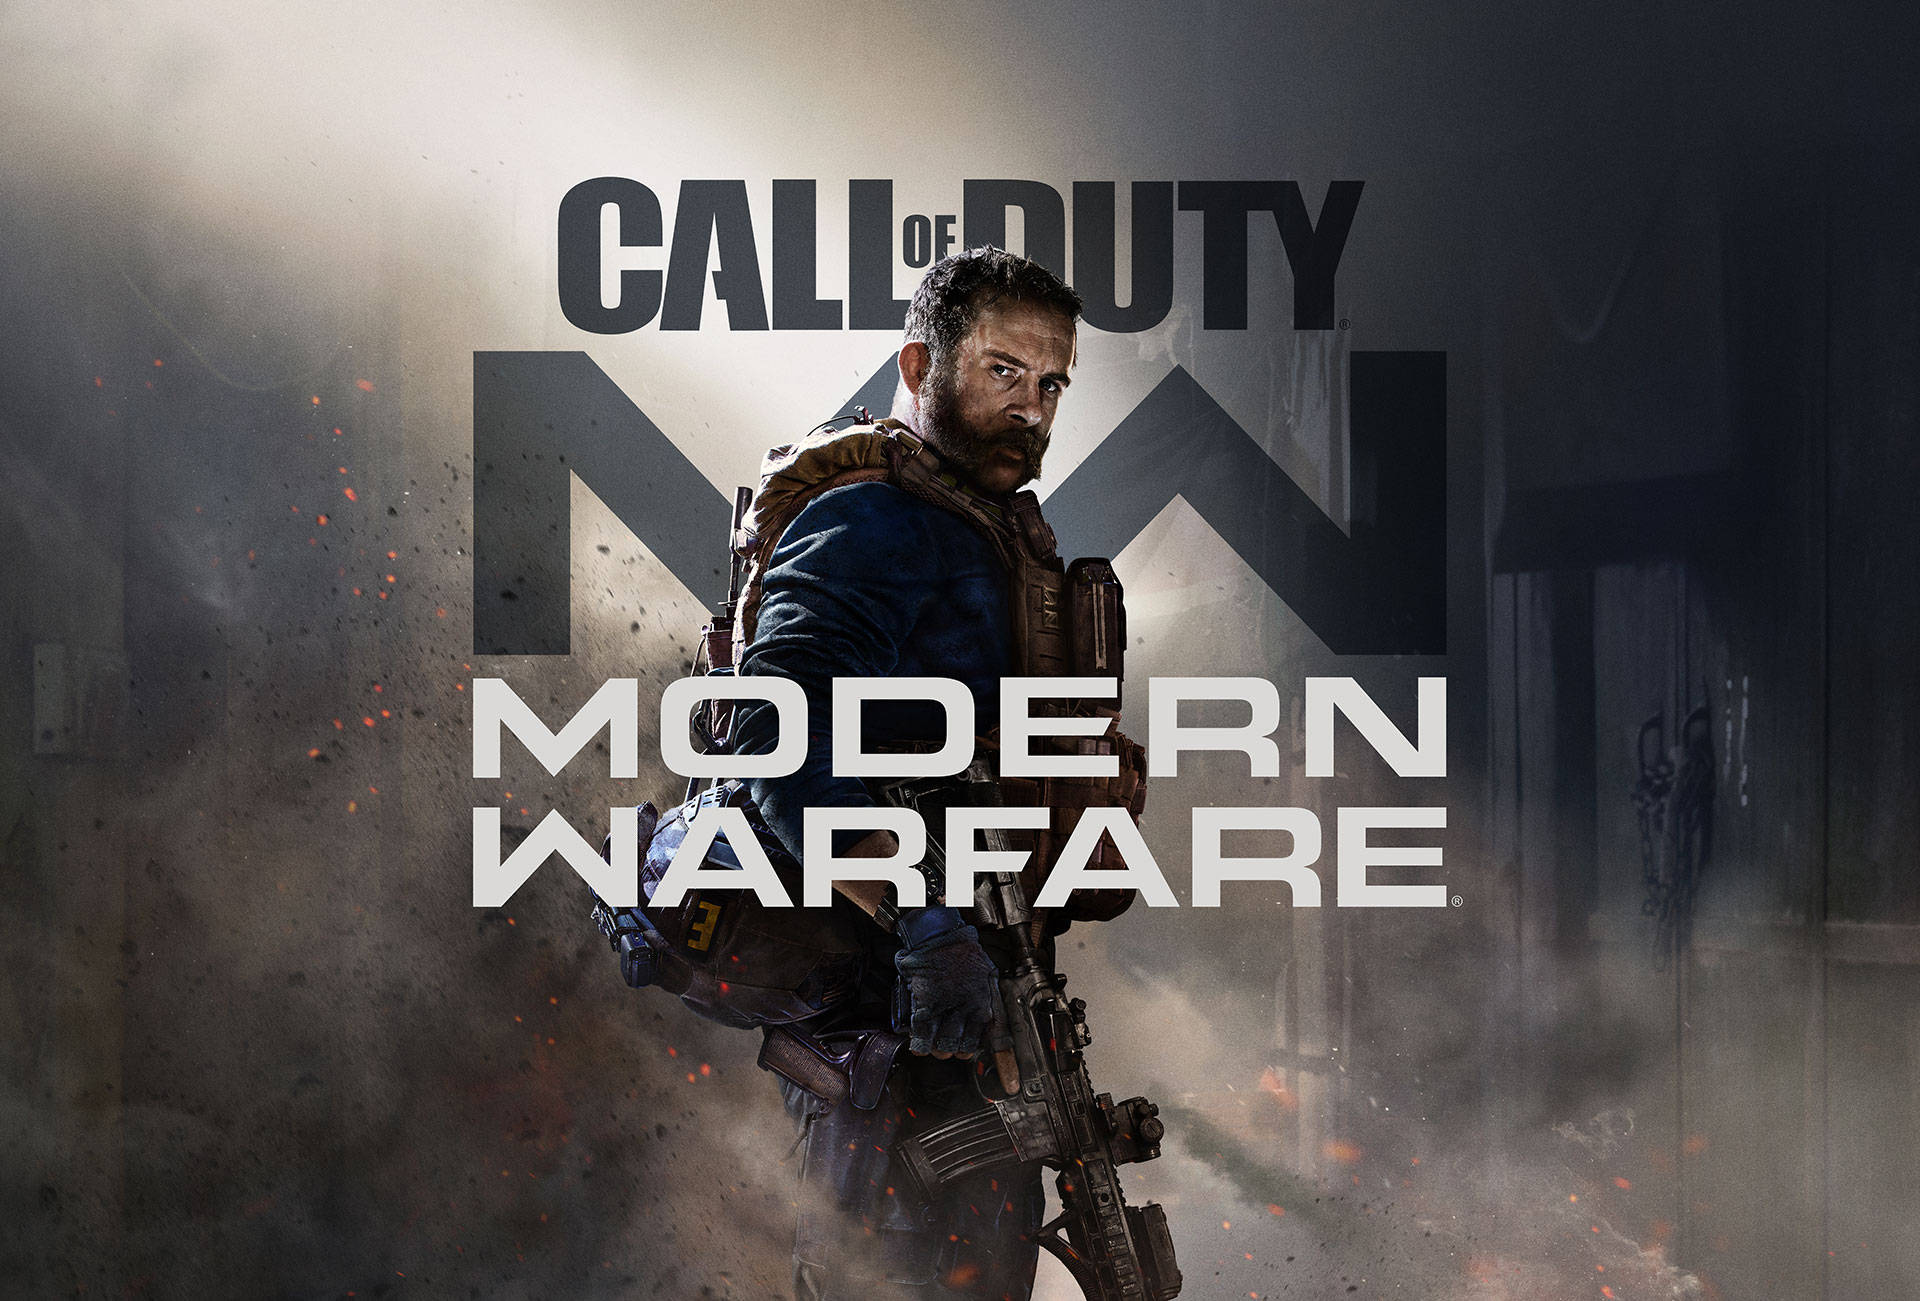 Juegaa Call Of Duty Modern Warfare Y Disfruta De La Emocionante Acción De Disparos En Primera Persona. Fondo de pantalla